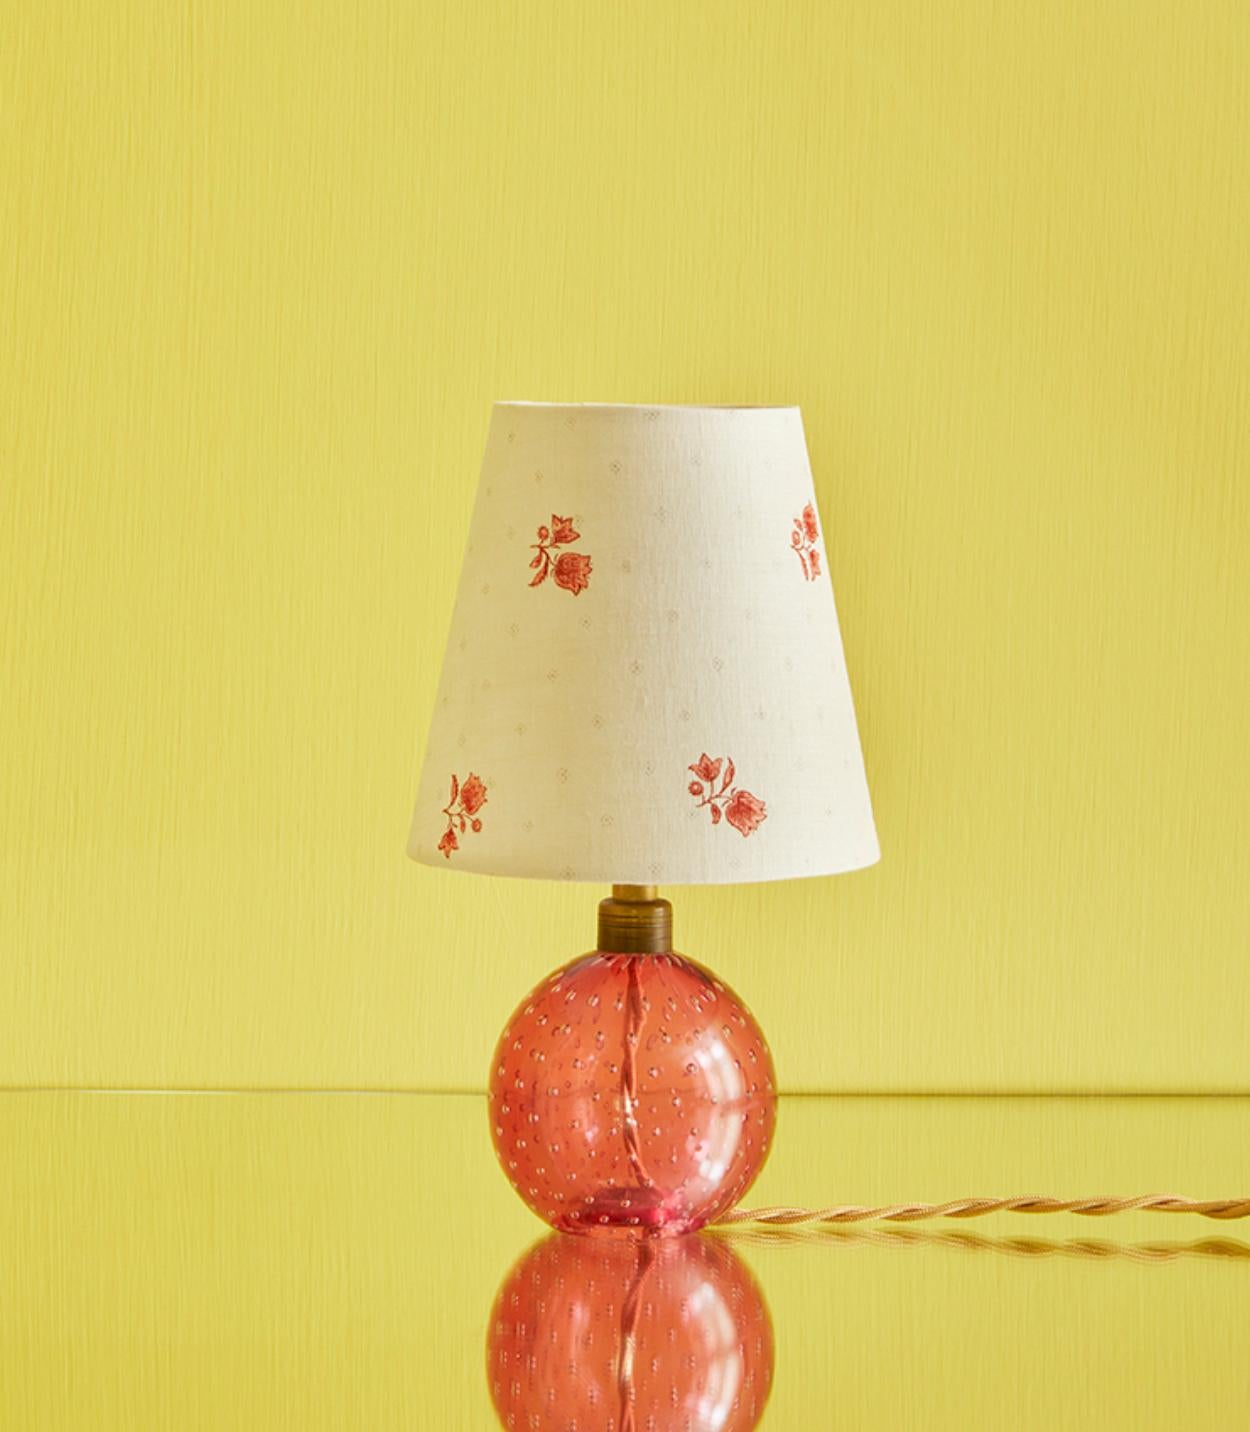 Italien, 1950er Jahre

Murano Tischlampe aus rosafarbenem Blasenglas mit von uns angefertigtem Lampenschirm.

Maße: H 29 x Ø 16 cm.

Verwenden Sie für diese Lampe nur eine LED-Glühbirne.